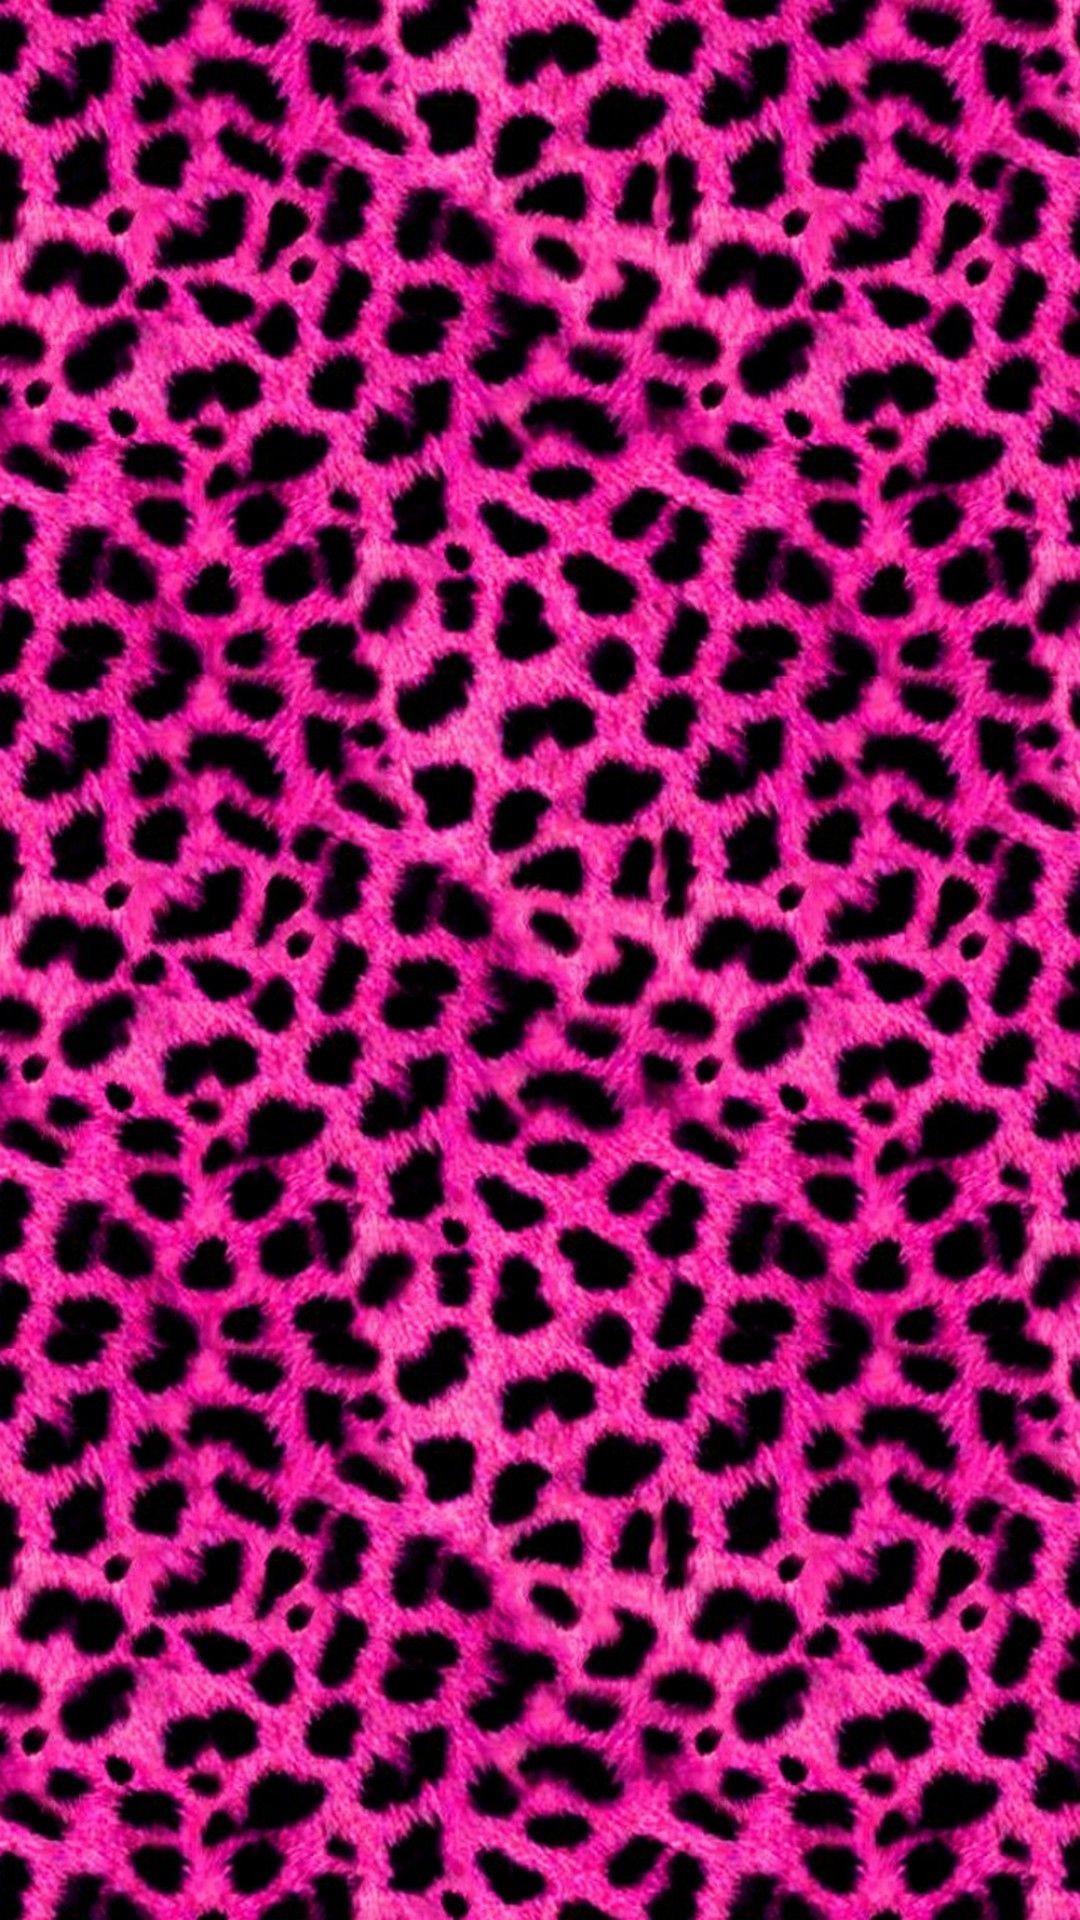 Free download Wallpaper Cheetah print wallpaper Animal print wallpaper  675x1200 for your Desktop Mobile  Tablet  Explore 29 Cheetah Print  iPhone Wallpapers  Cheetah Print Wallpaper Glitter Cheetah Print Wallpaper  Cheetah